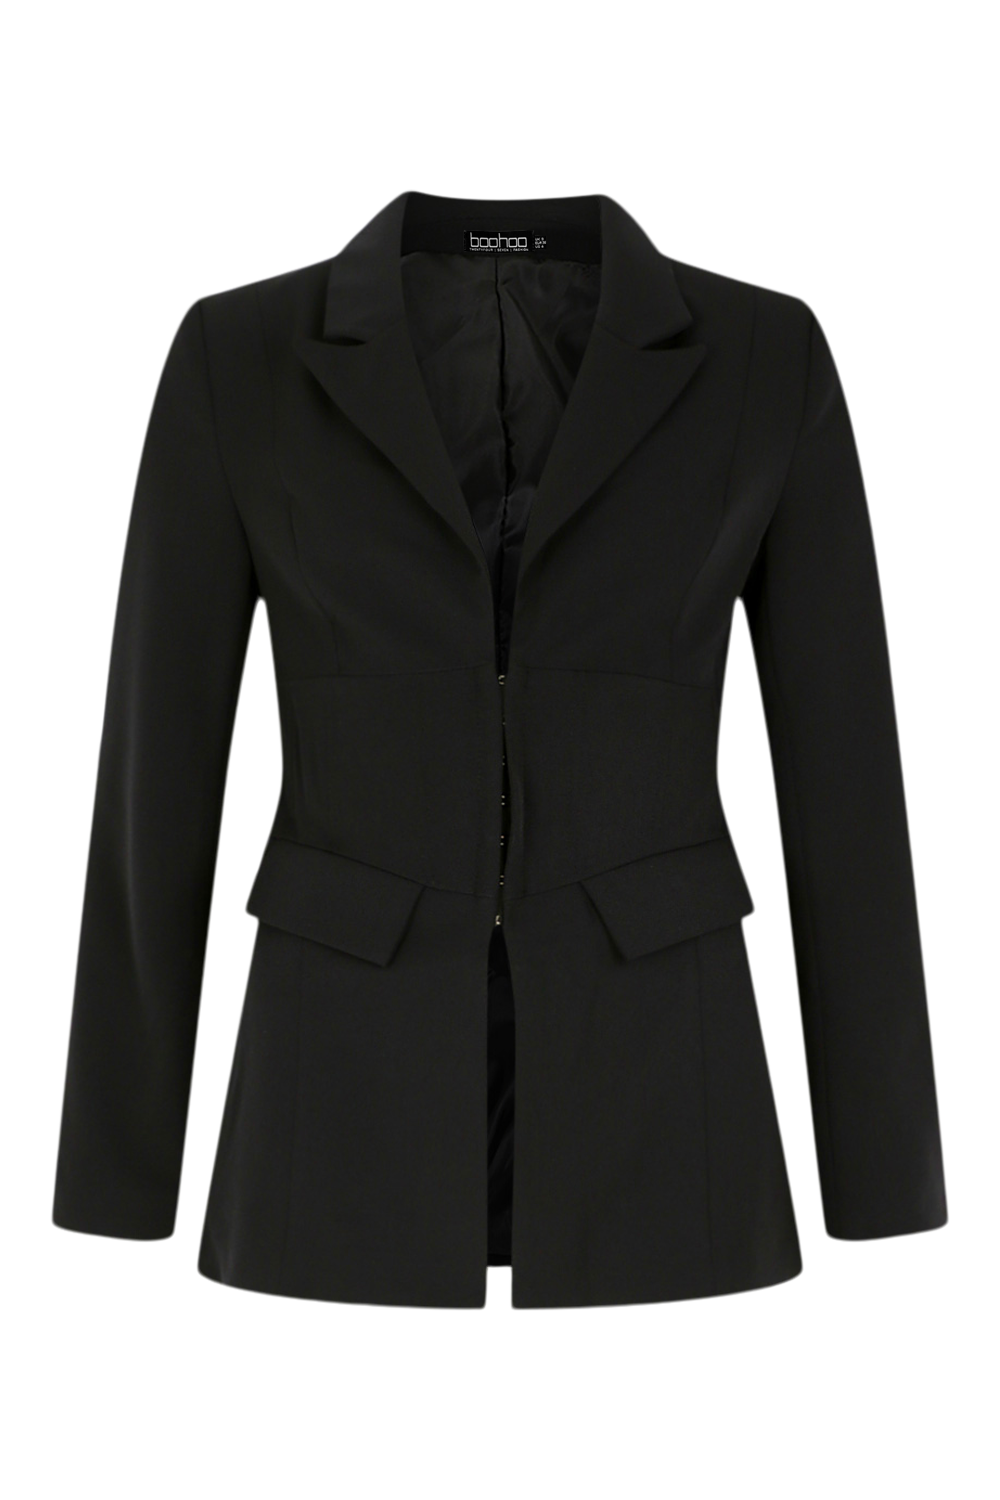 https://media.boohoo.com/i/boohoo/fzz36594_black_xl_4/female-la'tecia-corset-suit-blazer